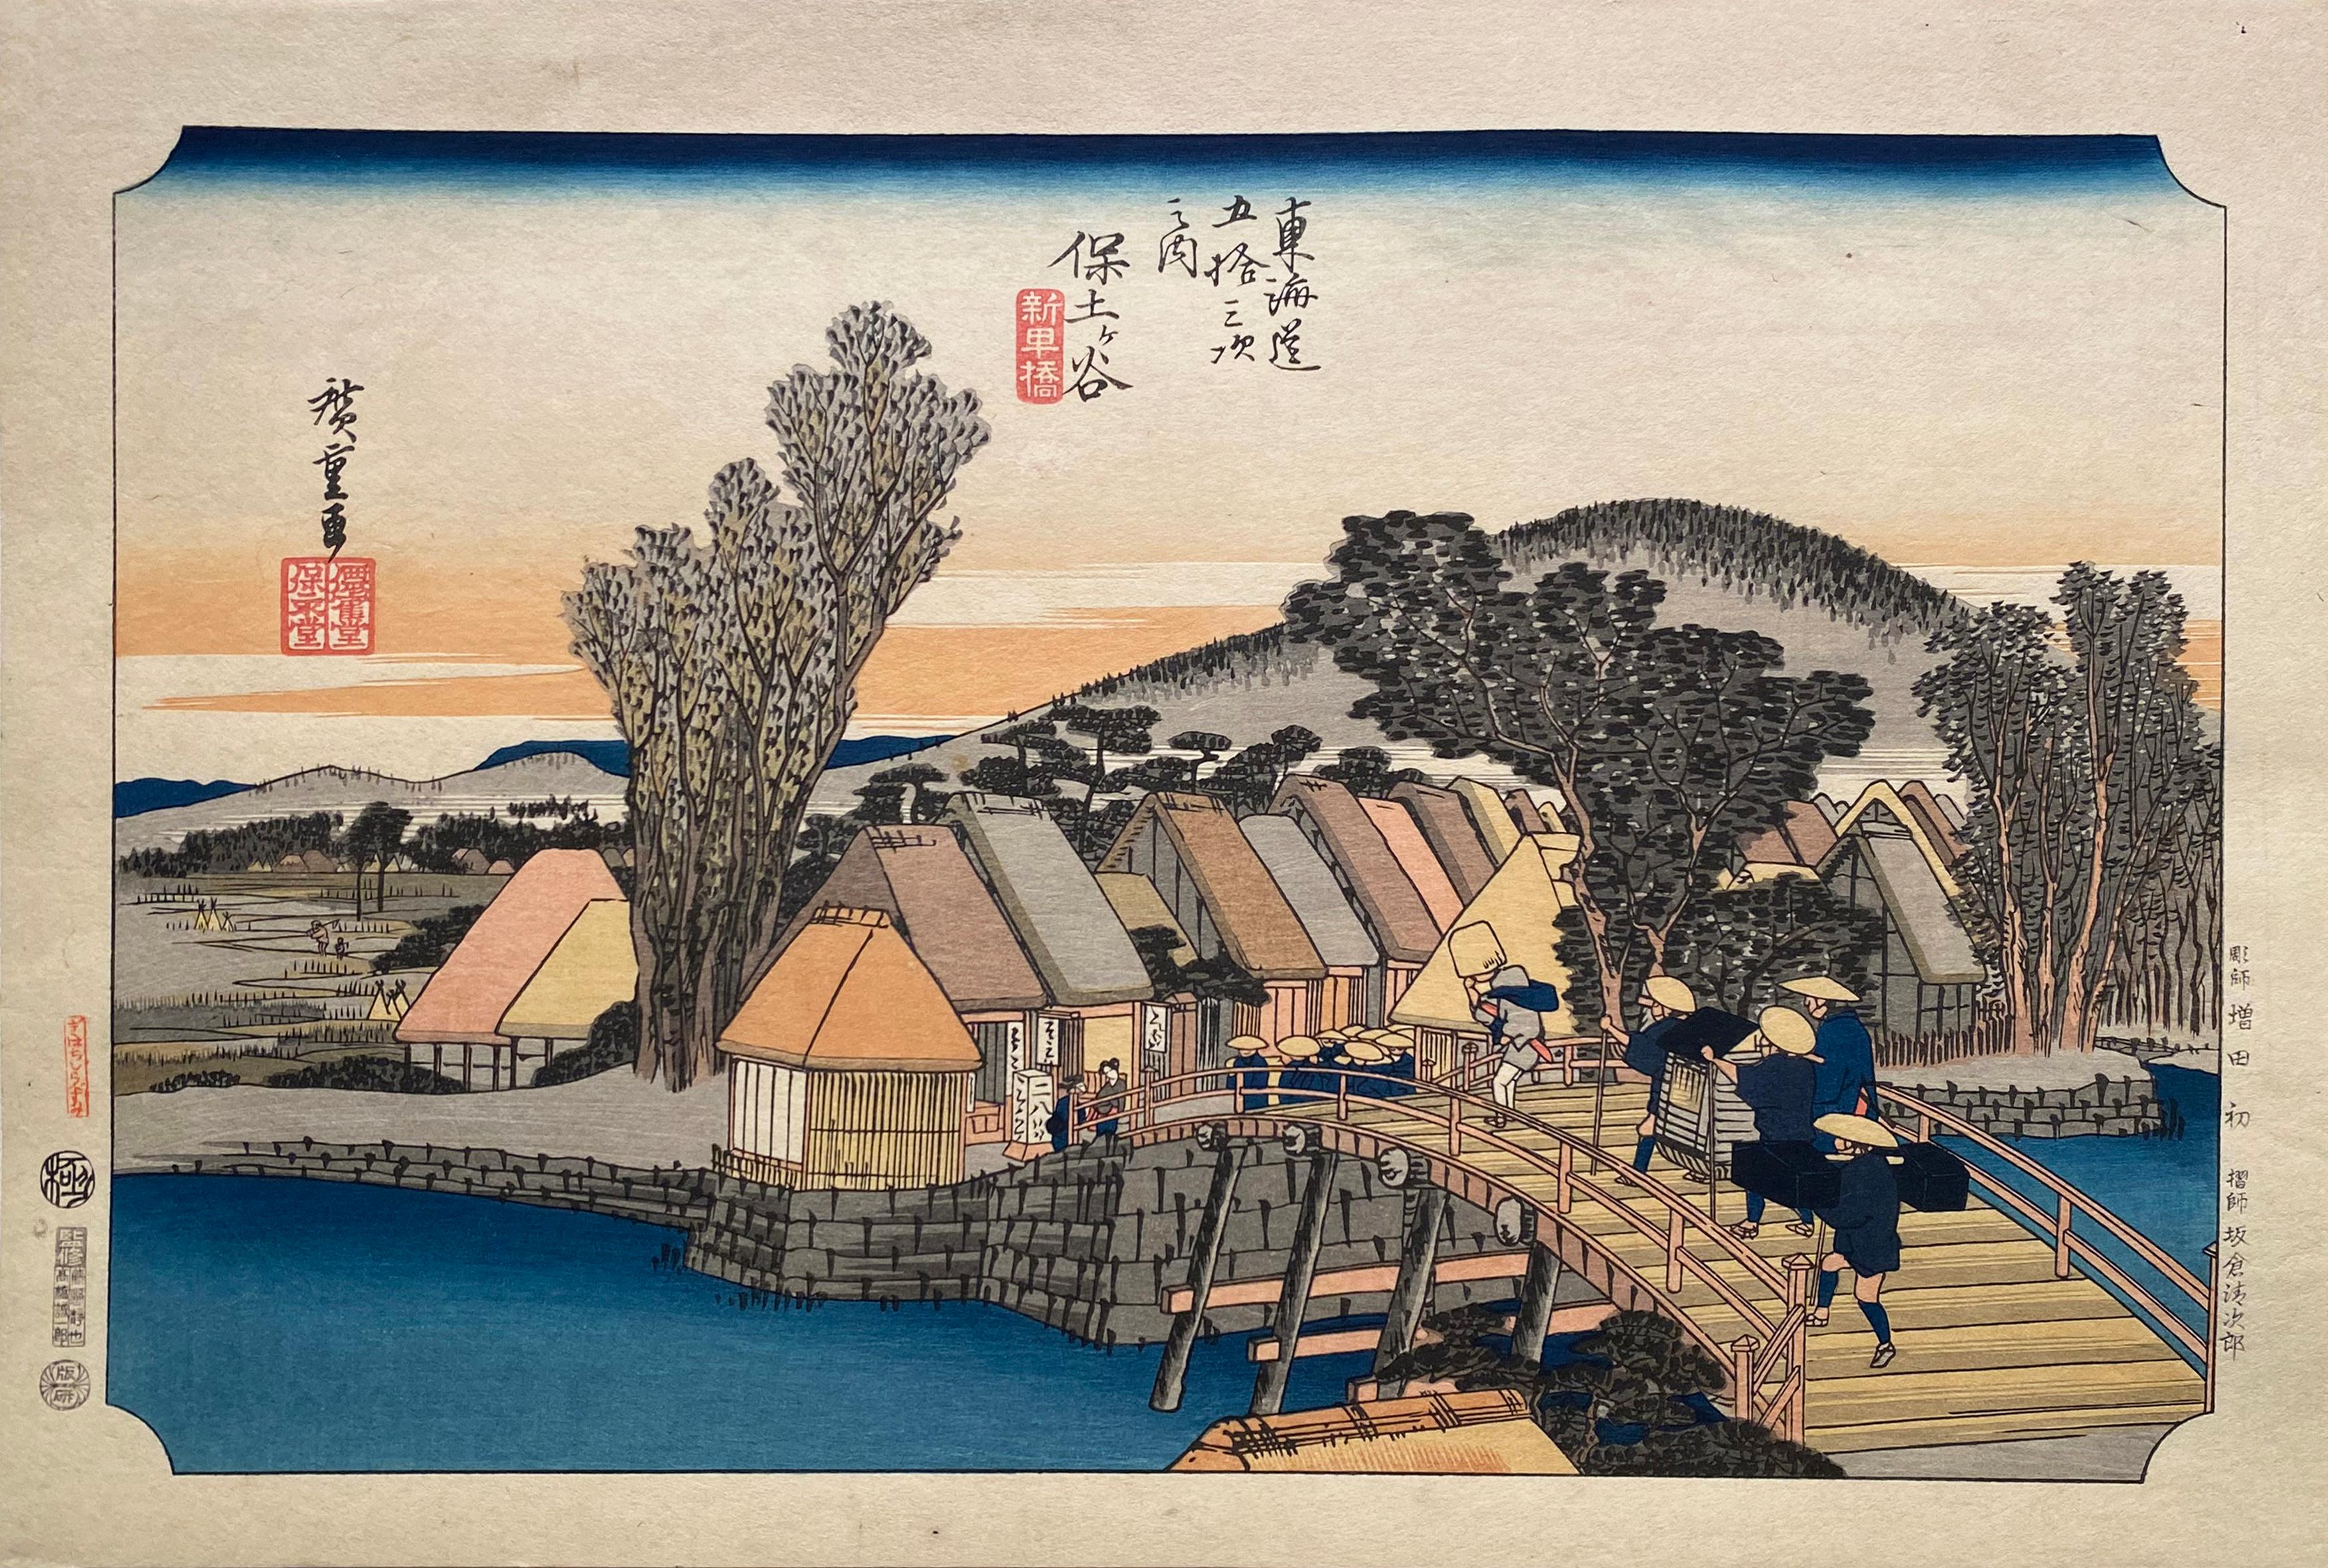 'Shinmachi Bridge', After Utagawa Hiroshige, Ukiyo-e Woodblock, Tokaido, Edo